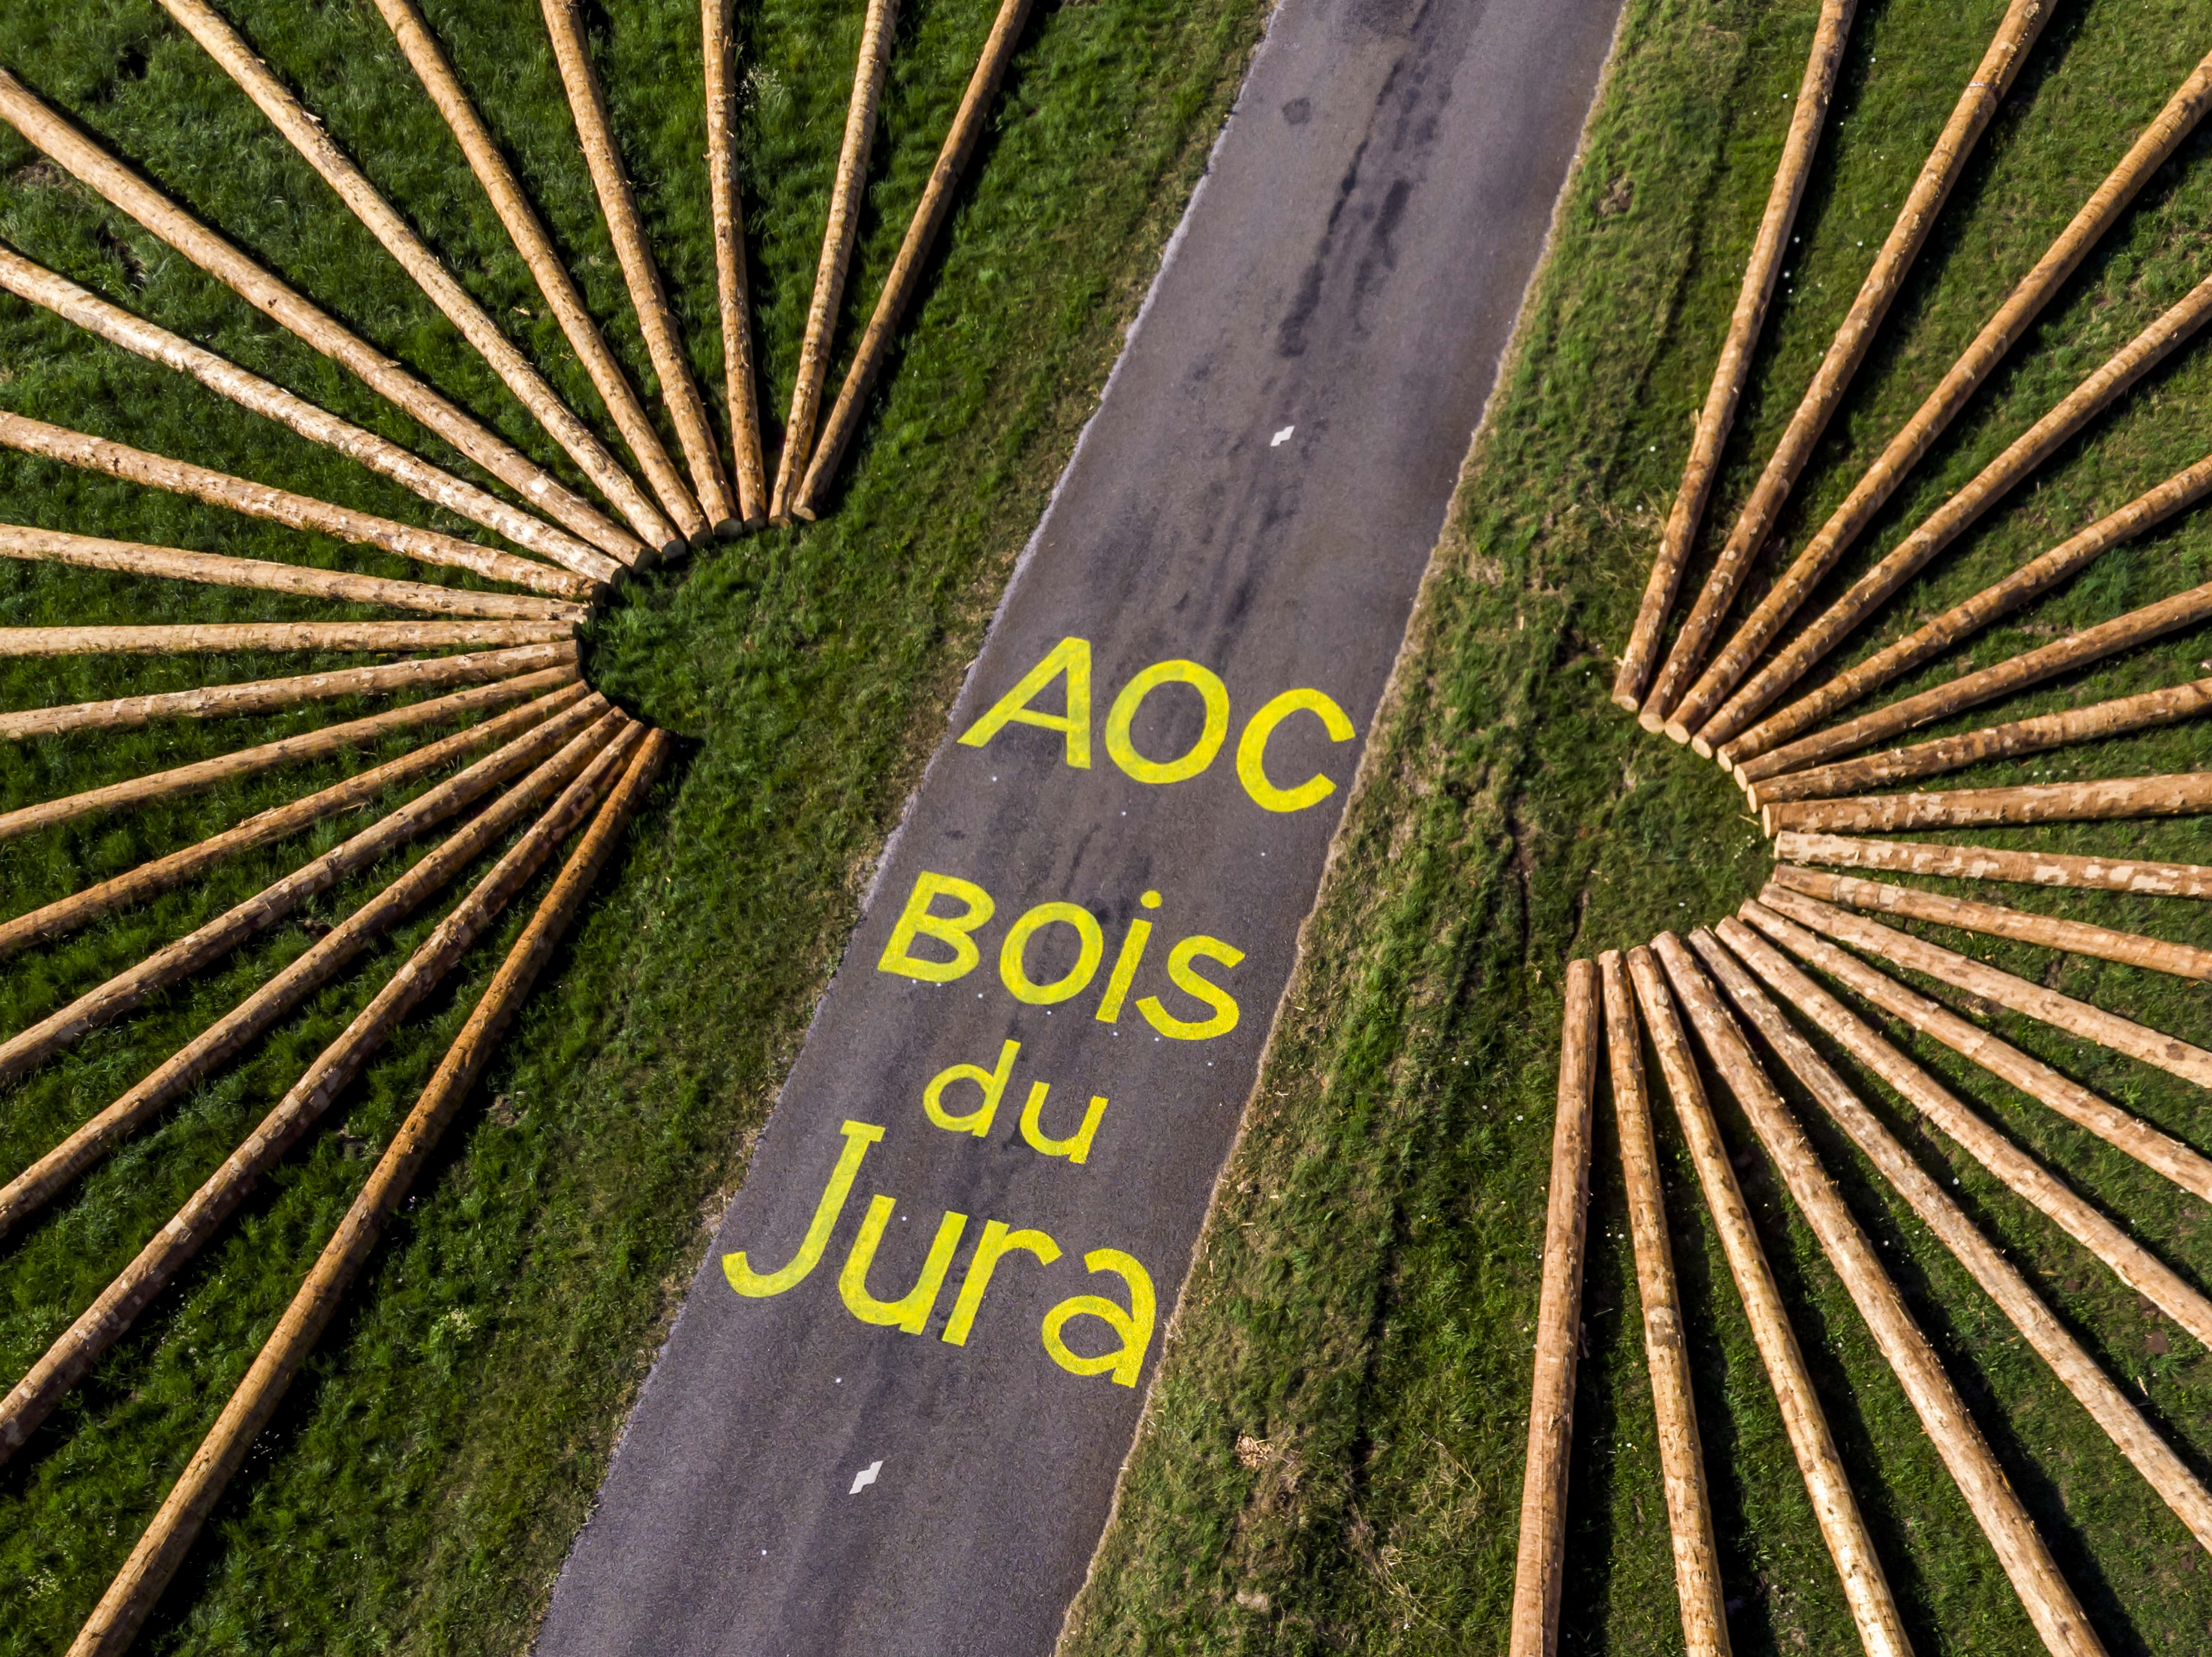 grumes de bois AOC disposées au sol formant un soleil ou des rayons de vélo. Sur la route au centre est inscrit "AOC Bois du Jura"